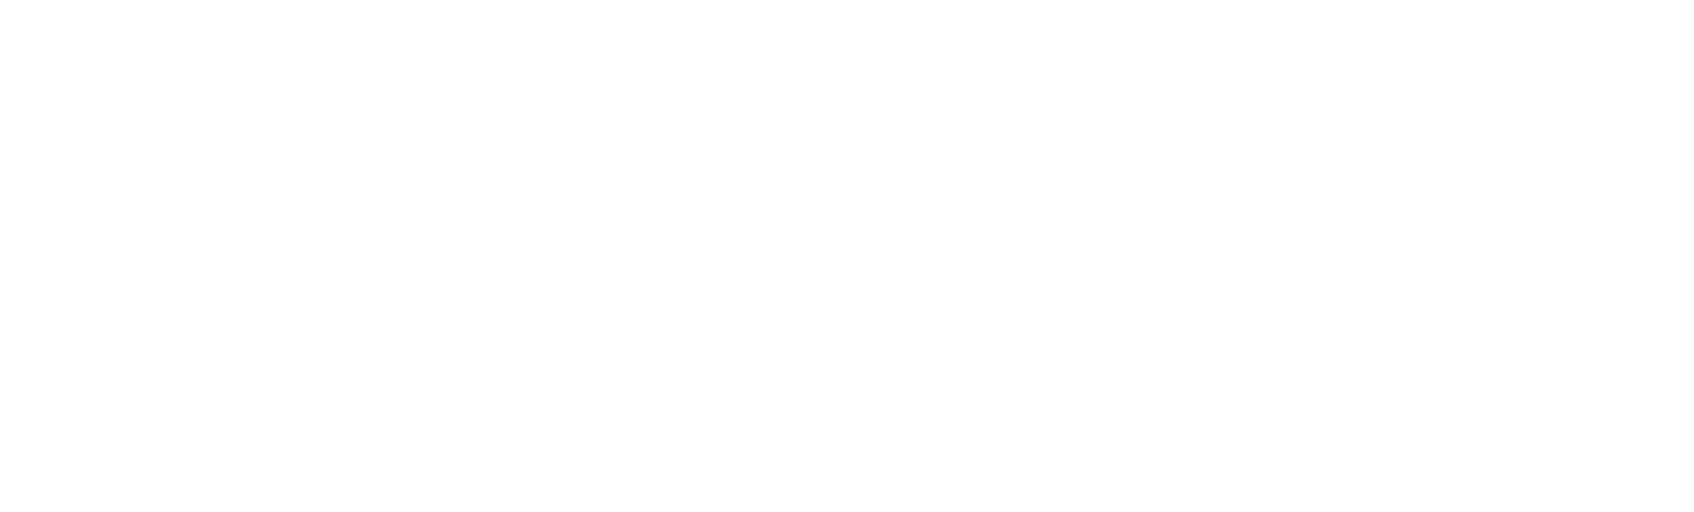 Megavolt_logo_3_1694x512